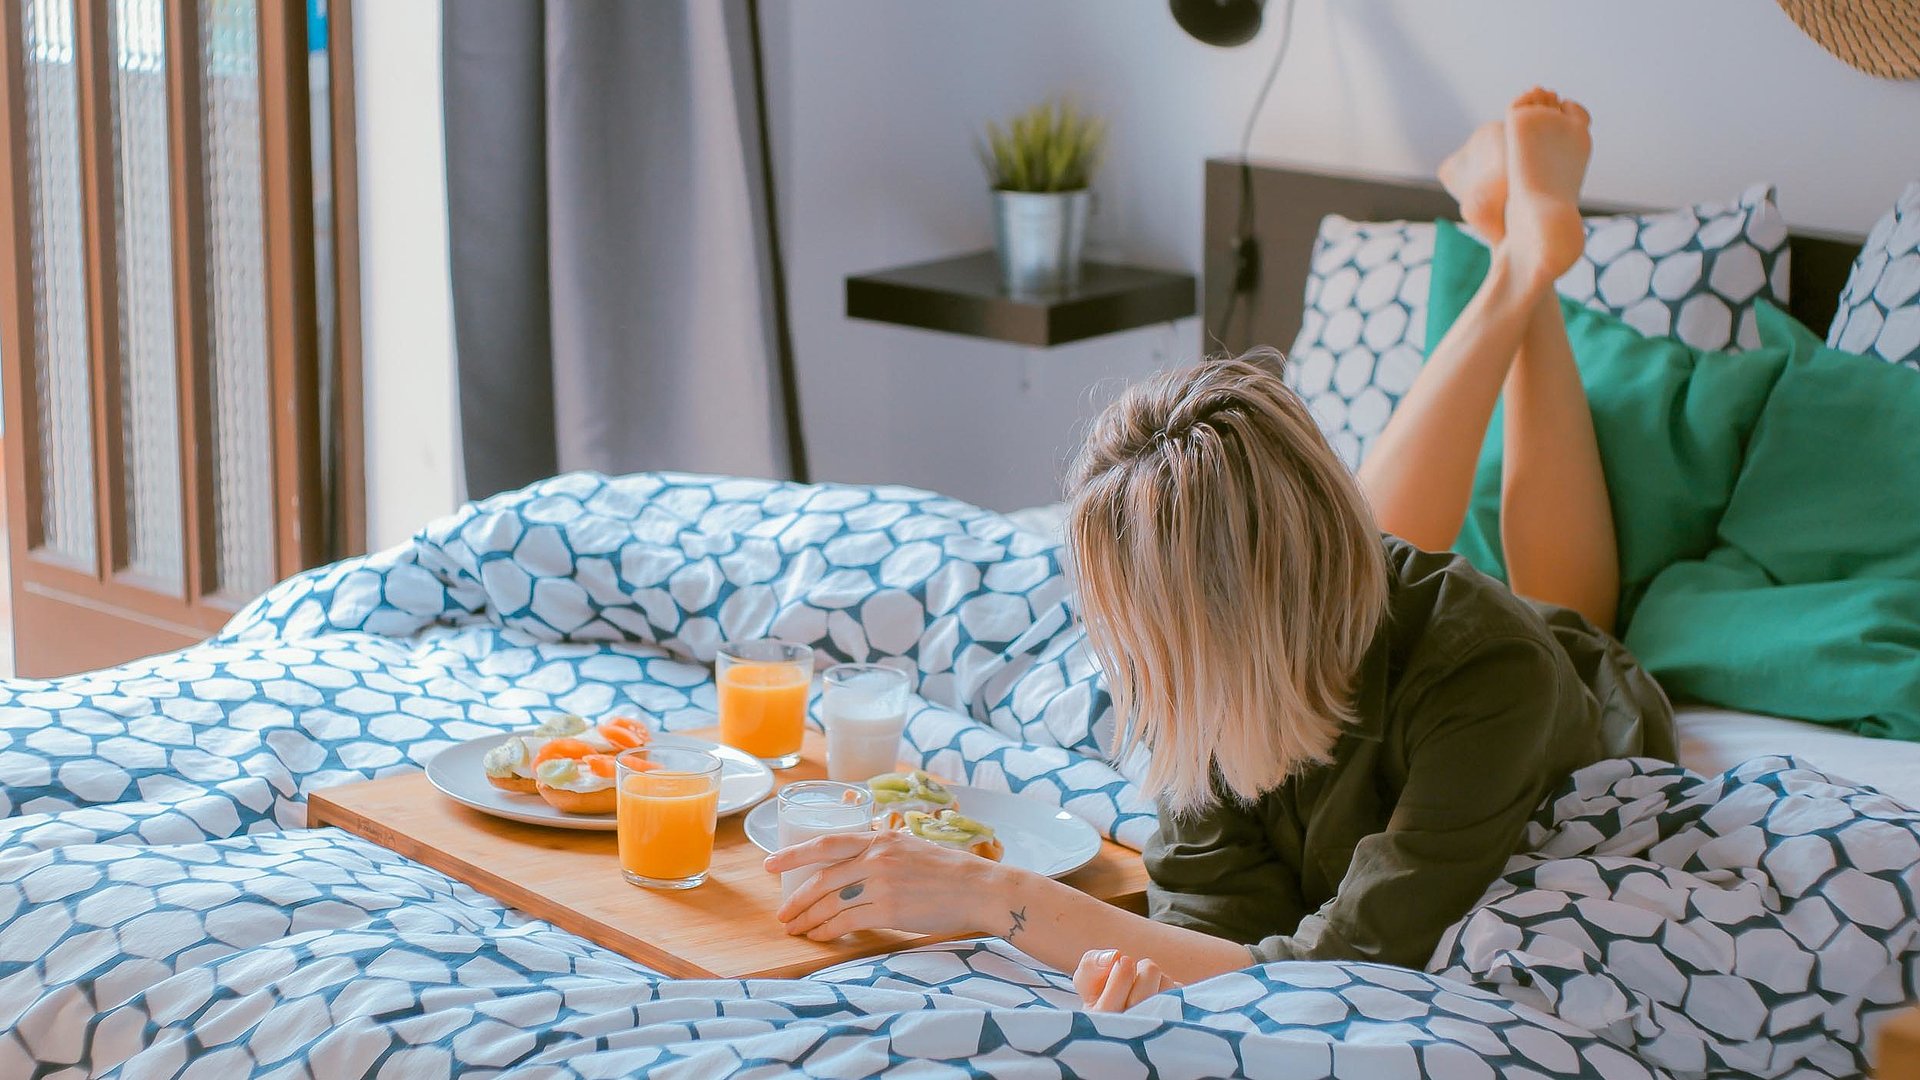 Pauschalangebote für Wochentagsunterkünfte in Unterfranken - junge blonde Frau liegt im Bett neben einer Frühstücksplatte, gefüllt mit O-Saft, Milch und belegten Brötchen 